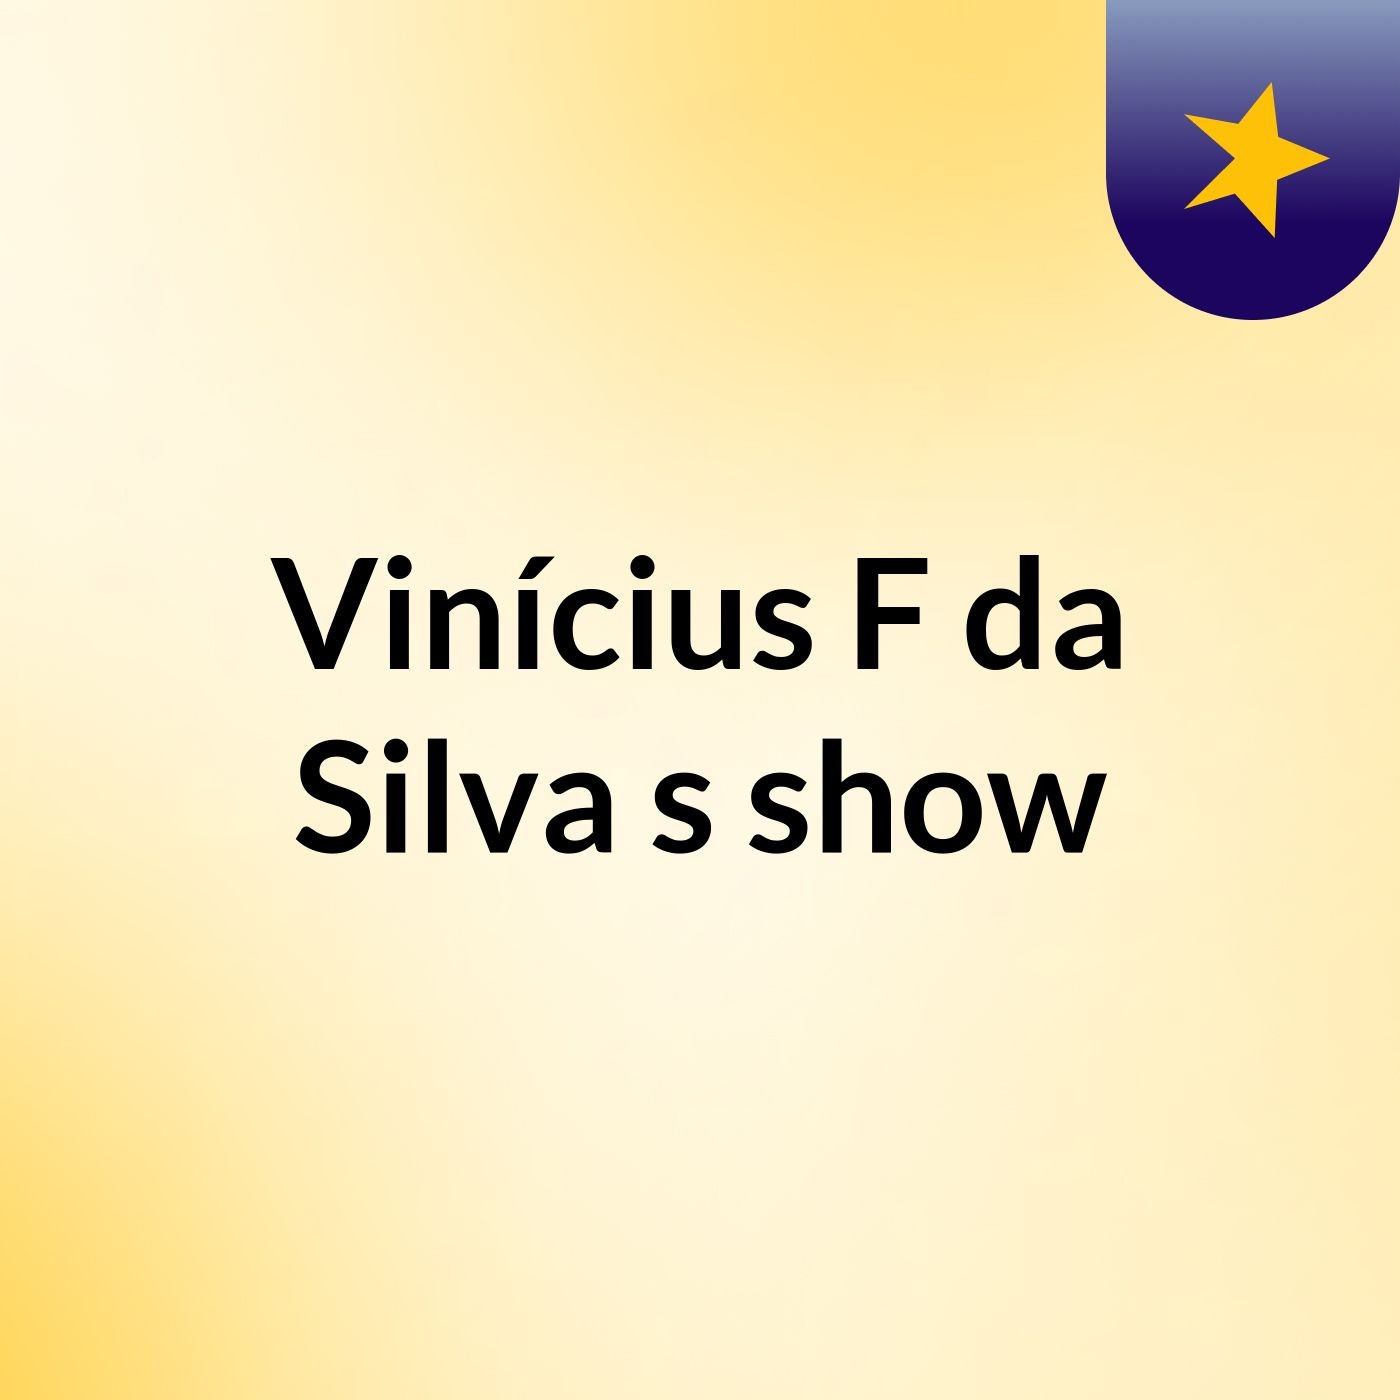 Vinícius F da Silva's show